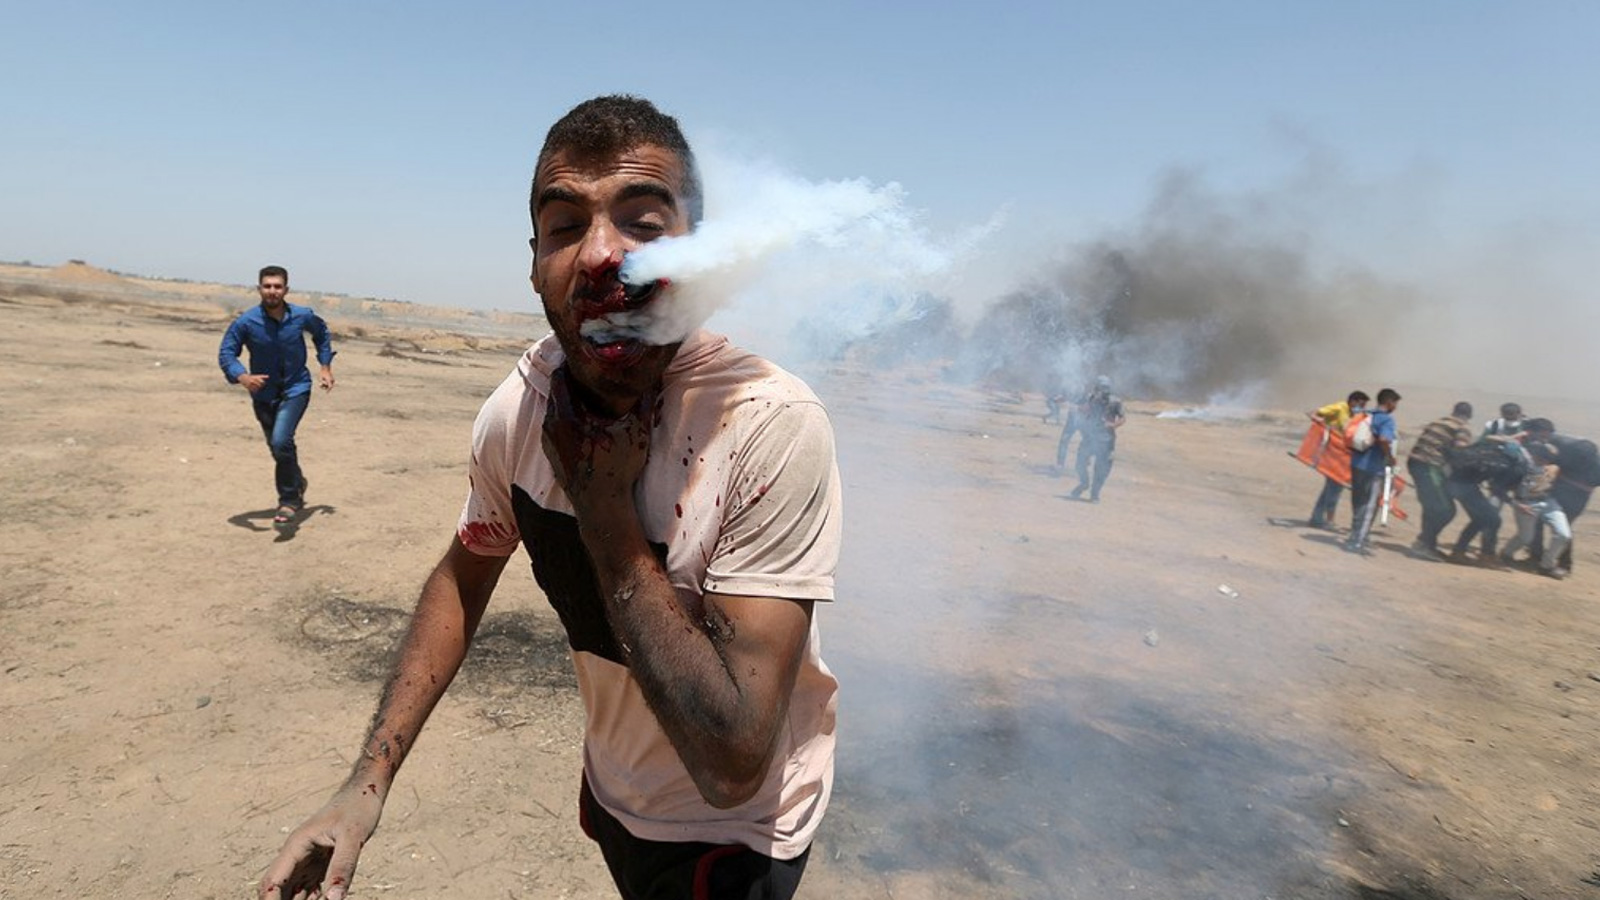 إصابة شاب بقنبلة غاز في فمه أطلقها جنود الاحتلال على المتظاهرين السلميين (التواصل الاجتماعي)